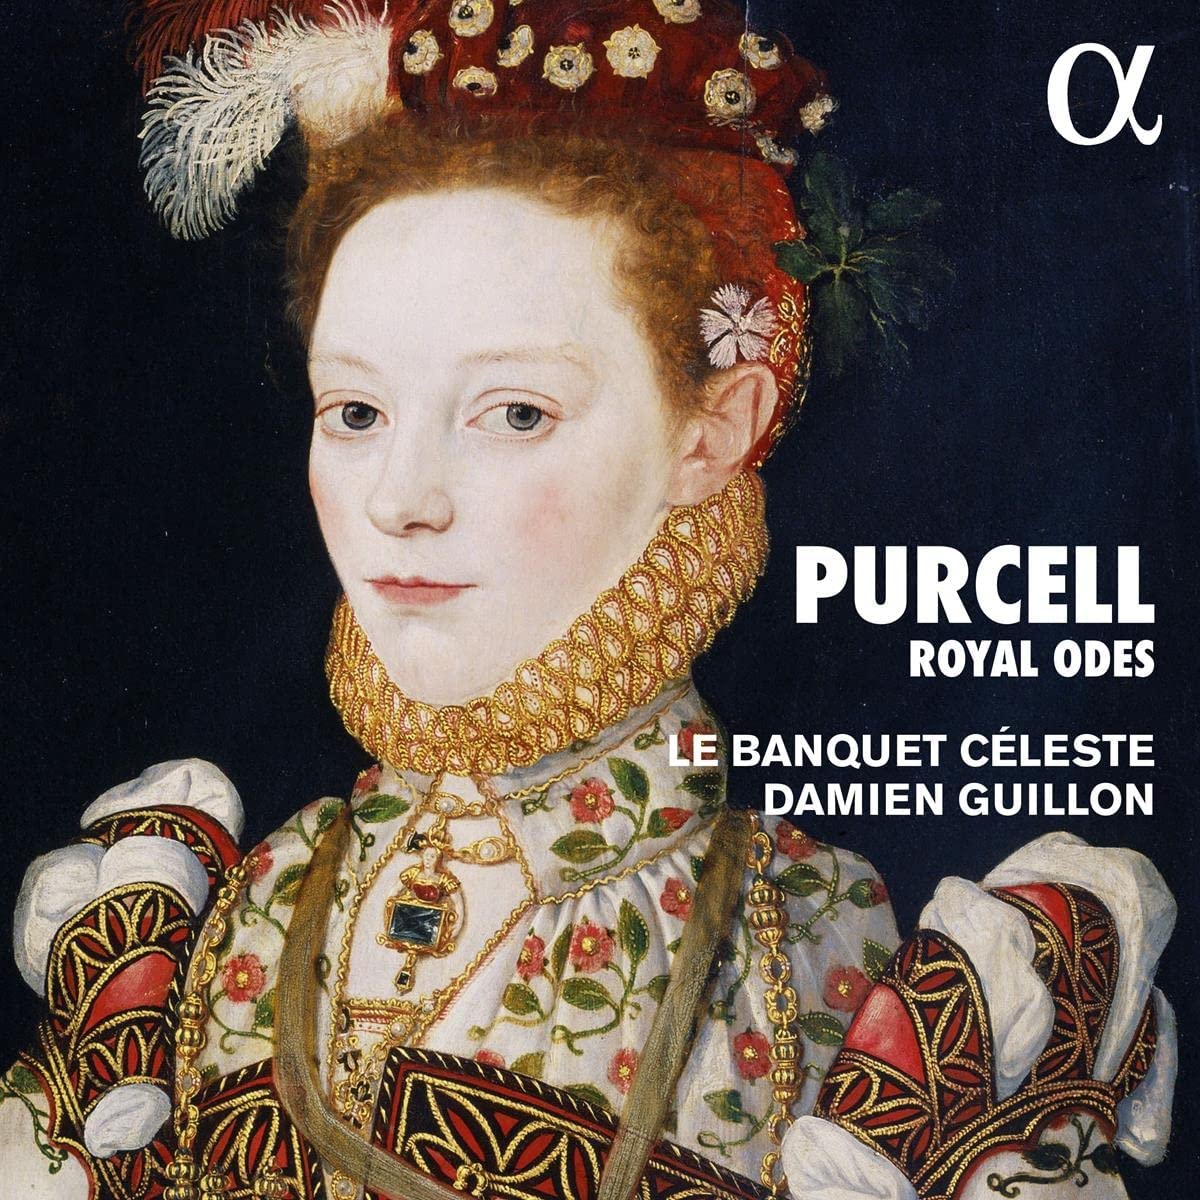 CD cover Purcell Royal Odes Le Banquet Céleste Damien Guillon